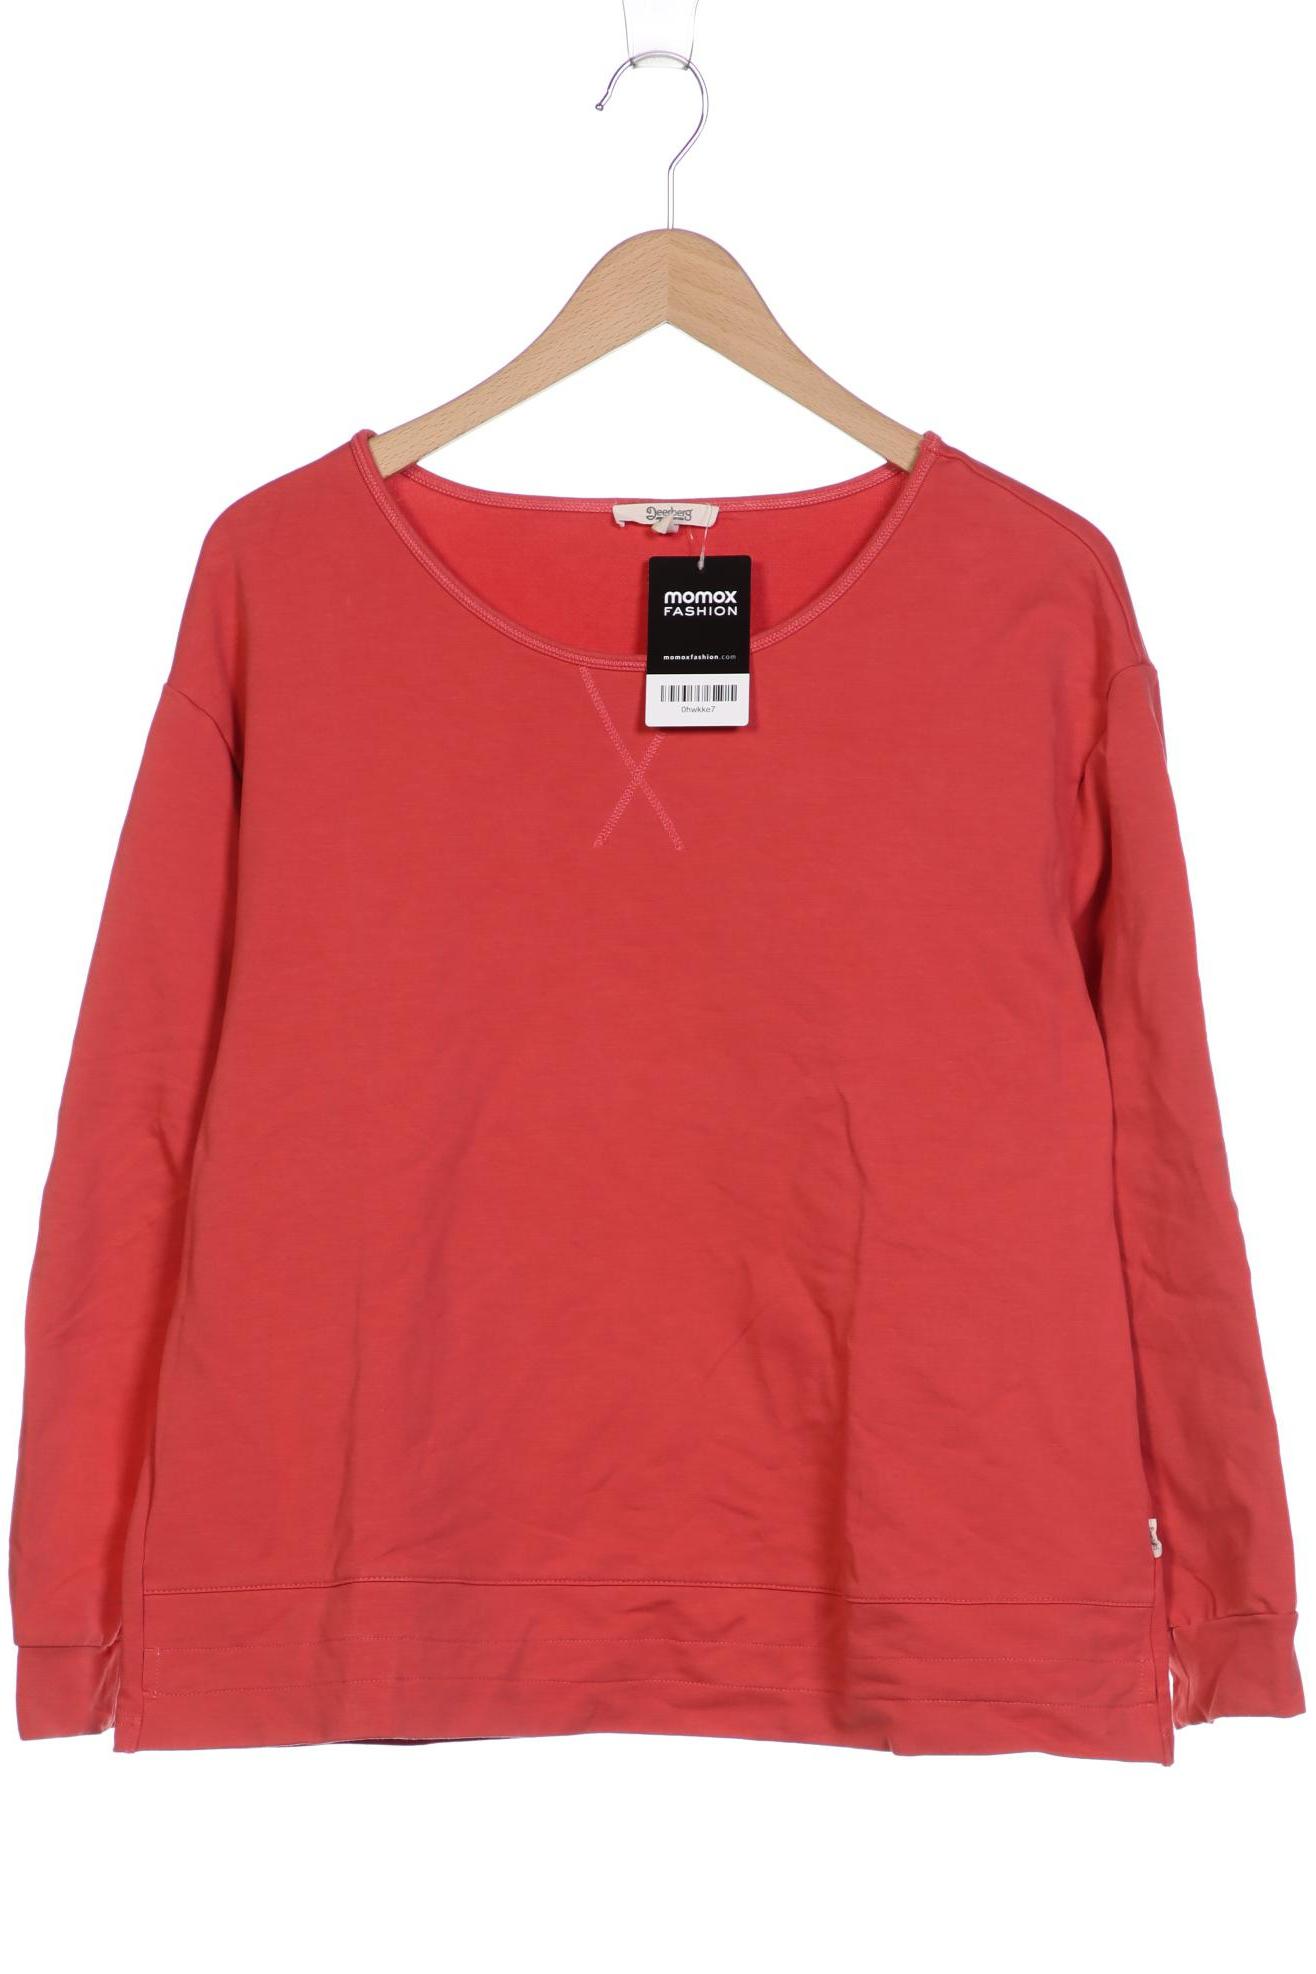 Deerberg Damen Sweatshirt, rot von Deerberg